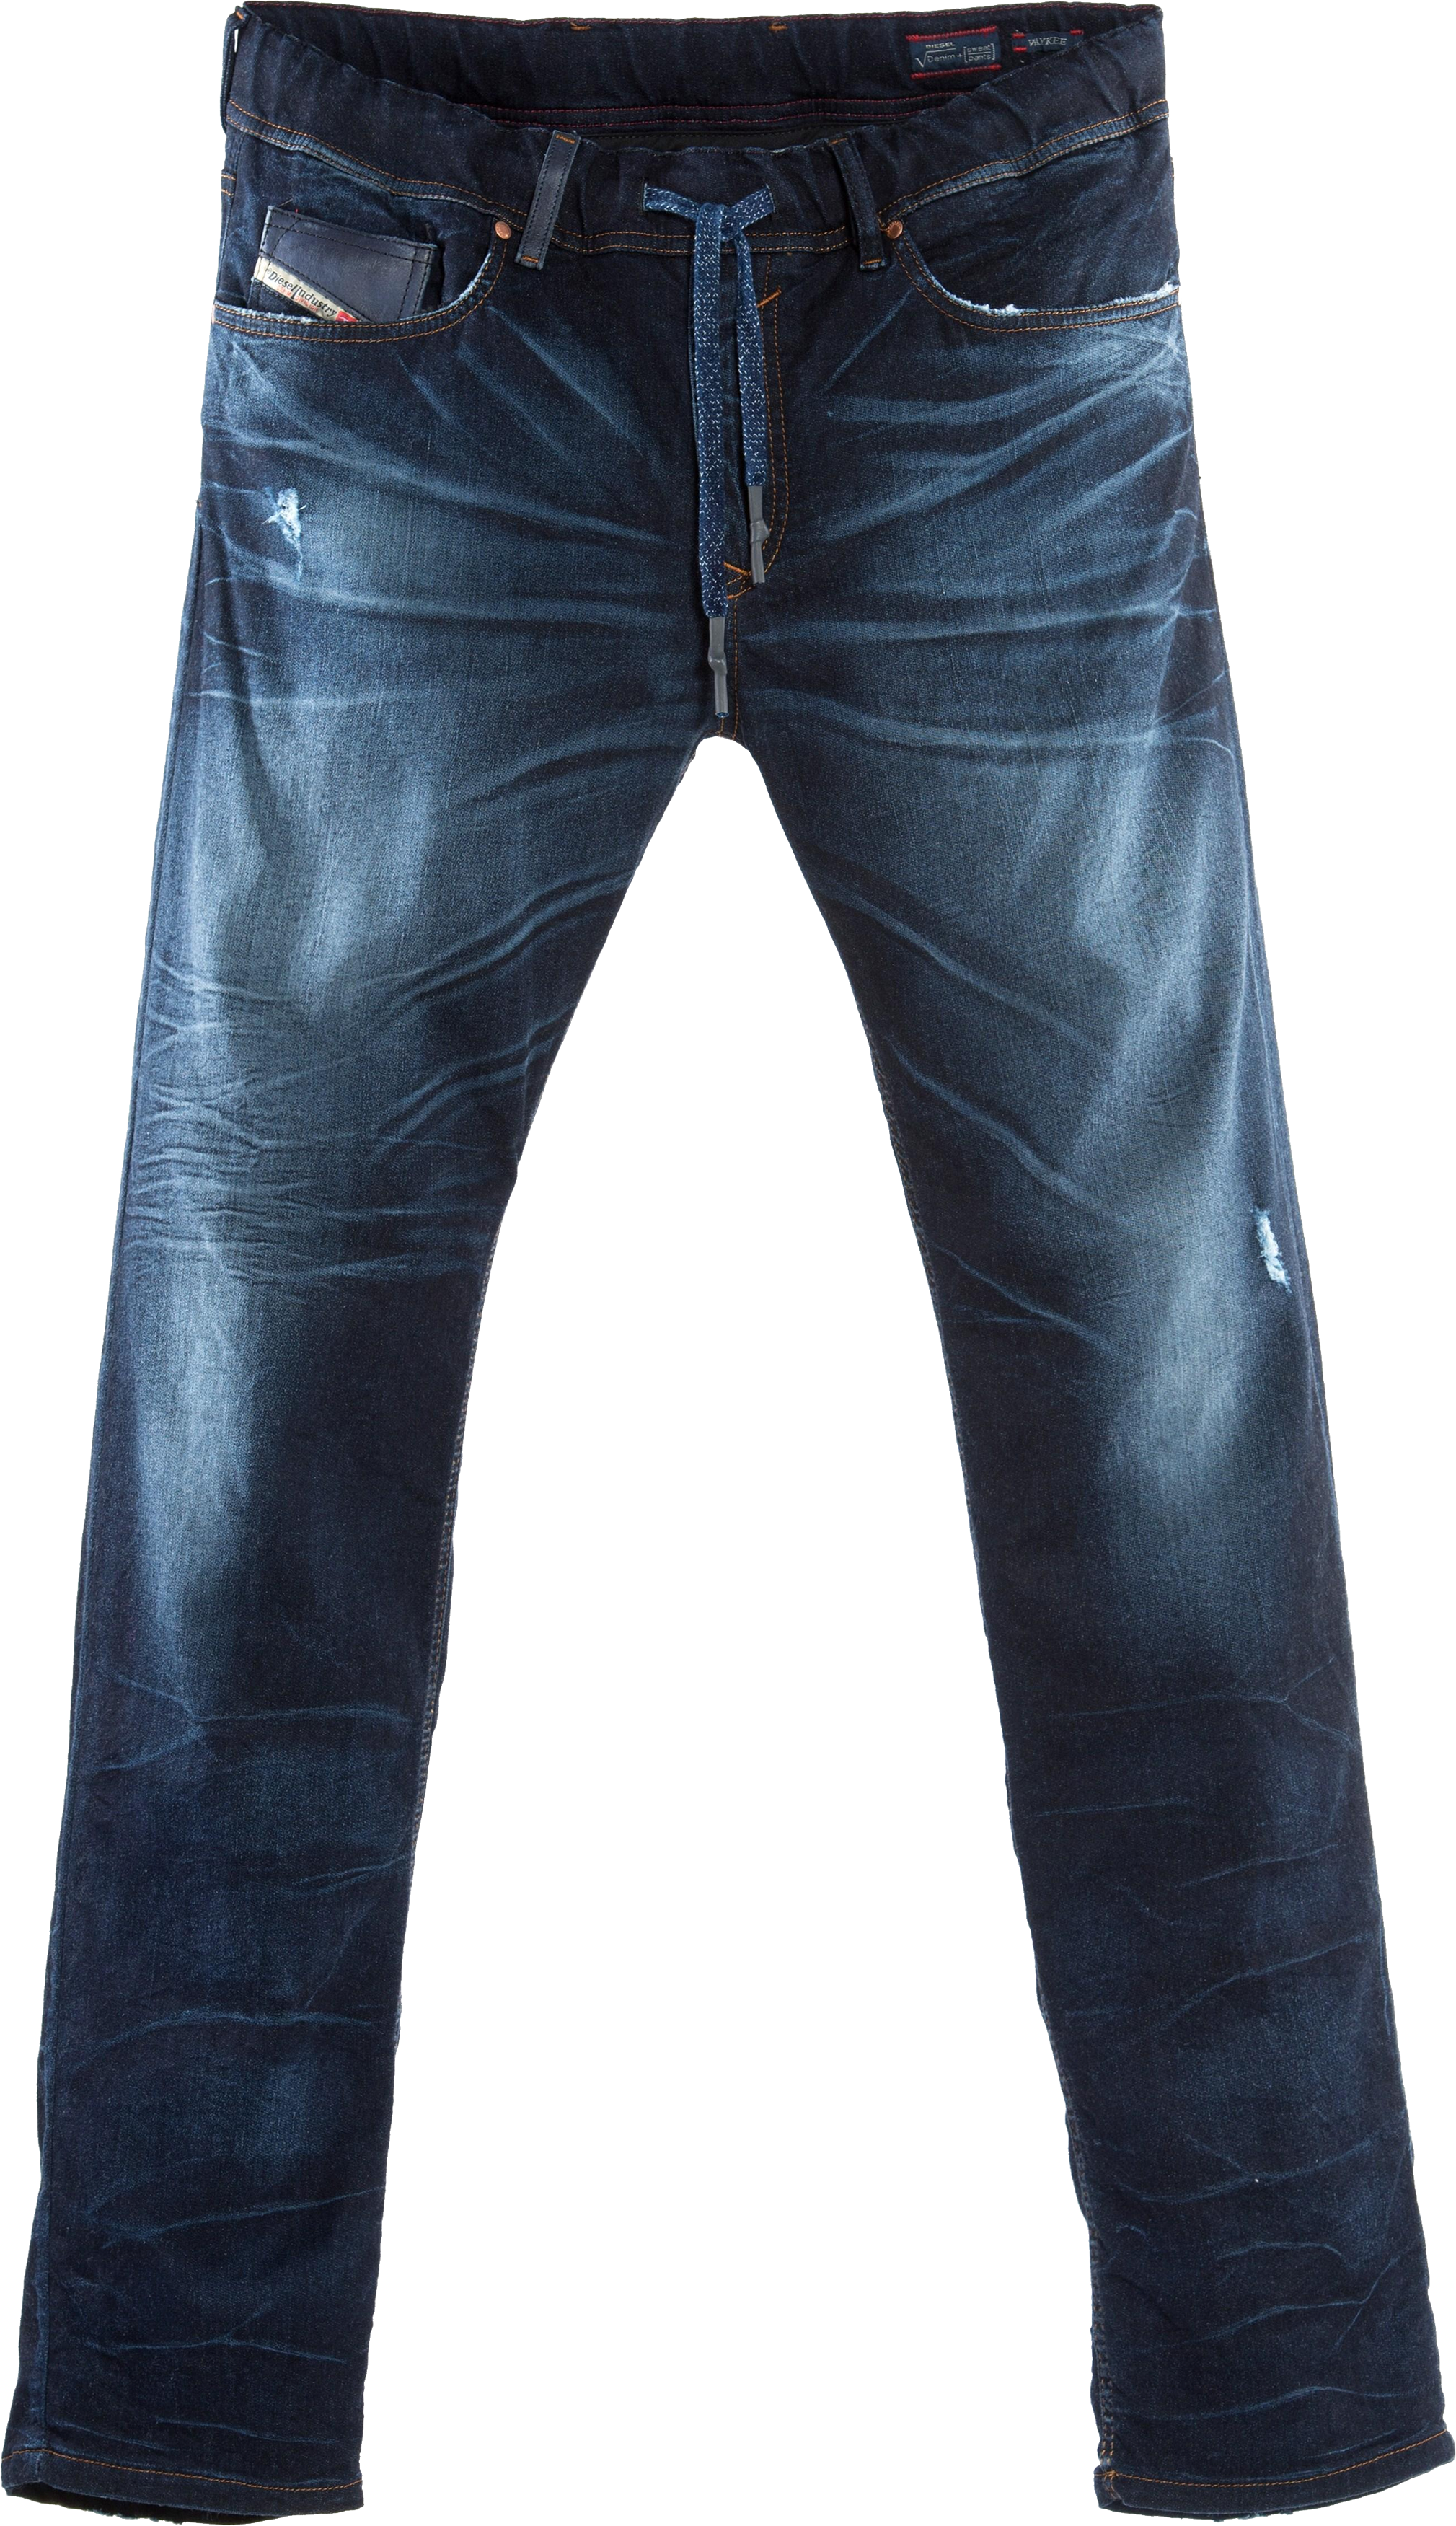 Imagem de alta qualidade jeans PNG